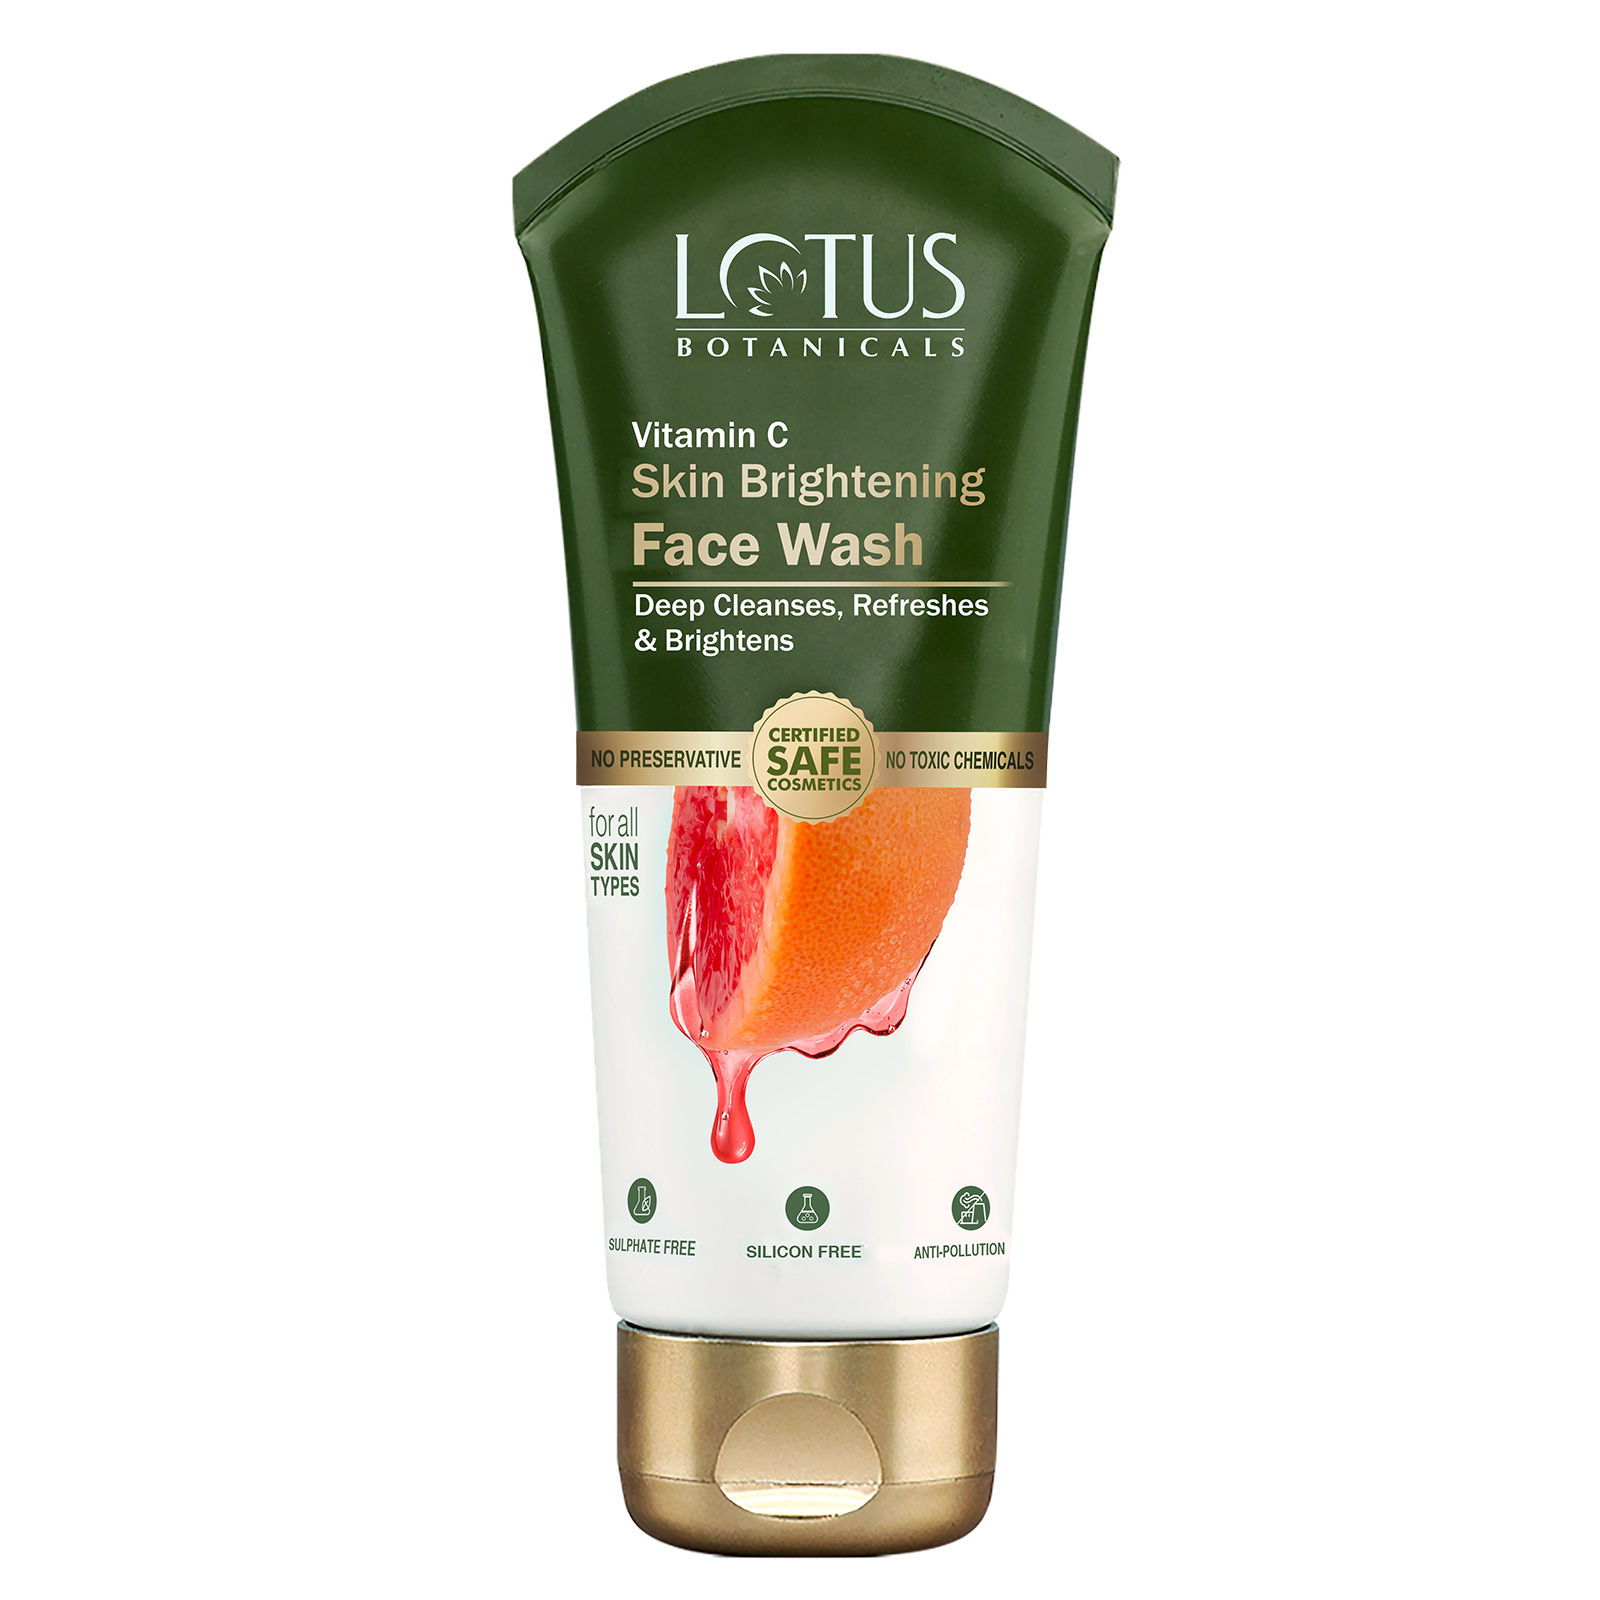 Lotus Botanicals Vitamin C Skin Brightening Face Wash